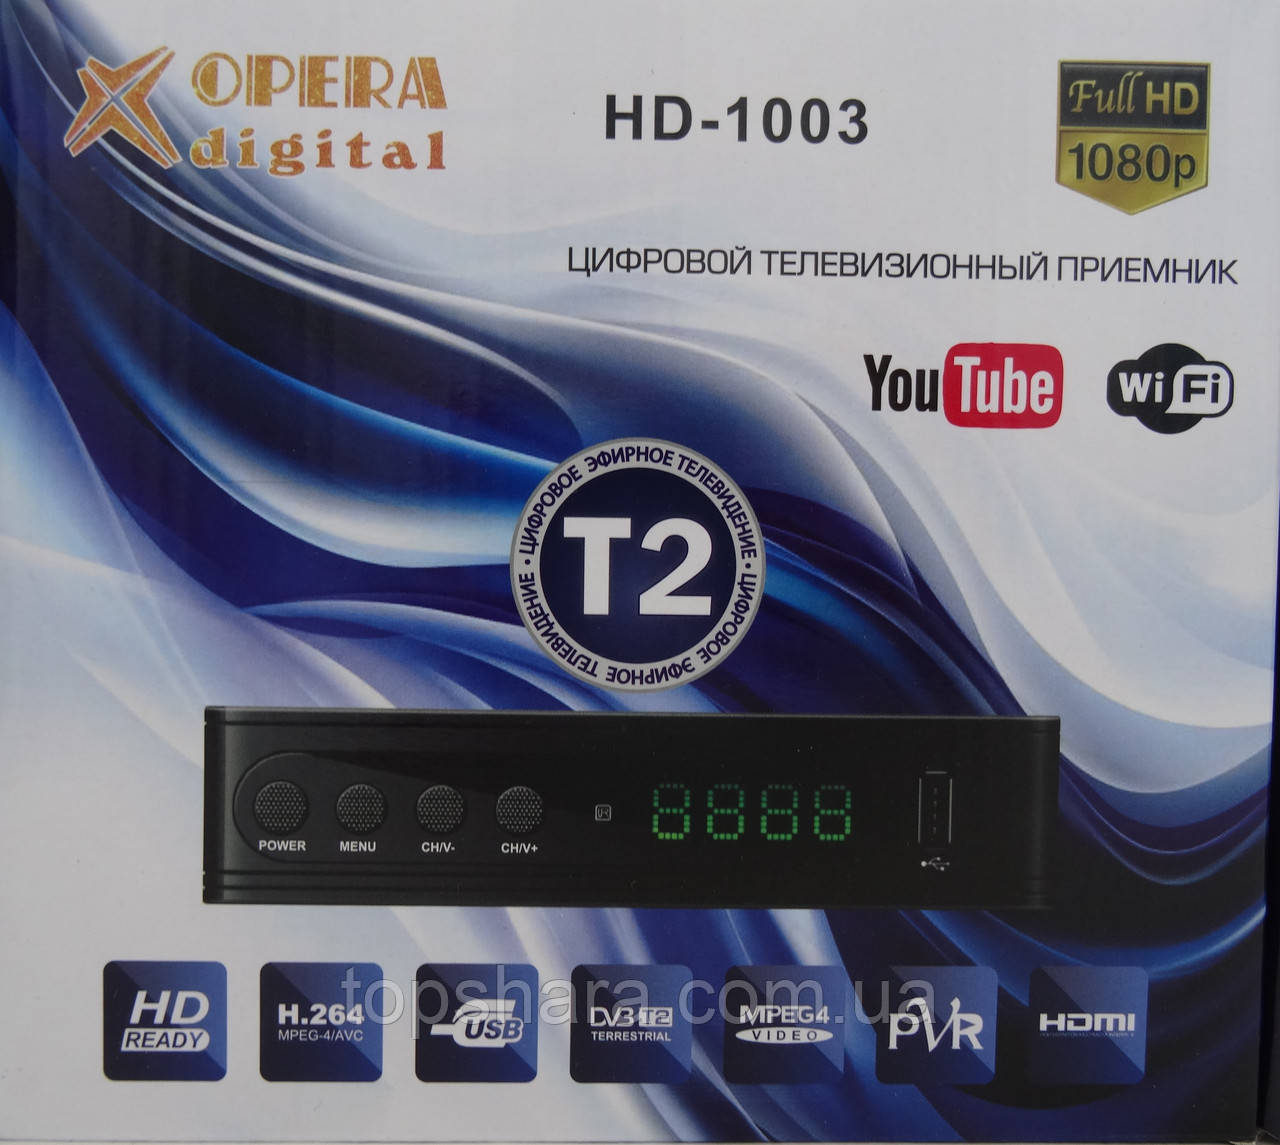 Цифровий телевізійний приймач Opera Digital HD-1003 Wi-Fi, HDMI, Full HD